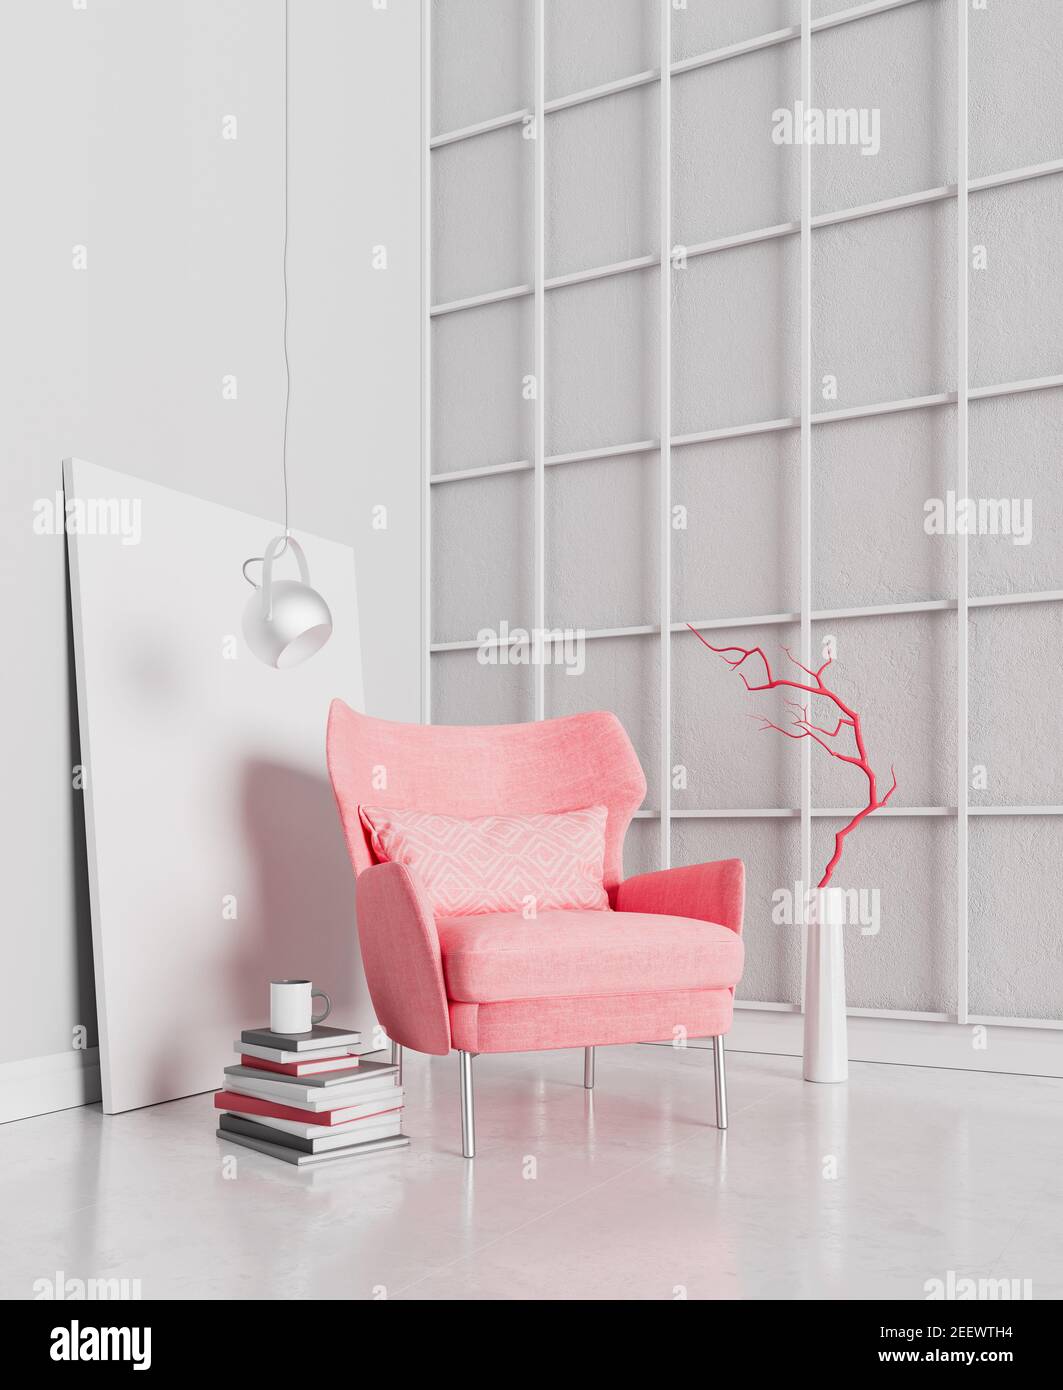 Pareti bianche in cemento con mobili rossi moderni, interni dal design minimalista, rendering 3d, illustrazione 3d Foto Stock